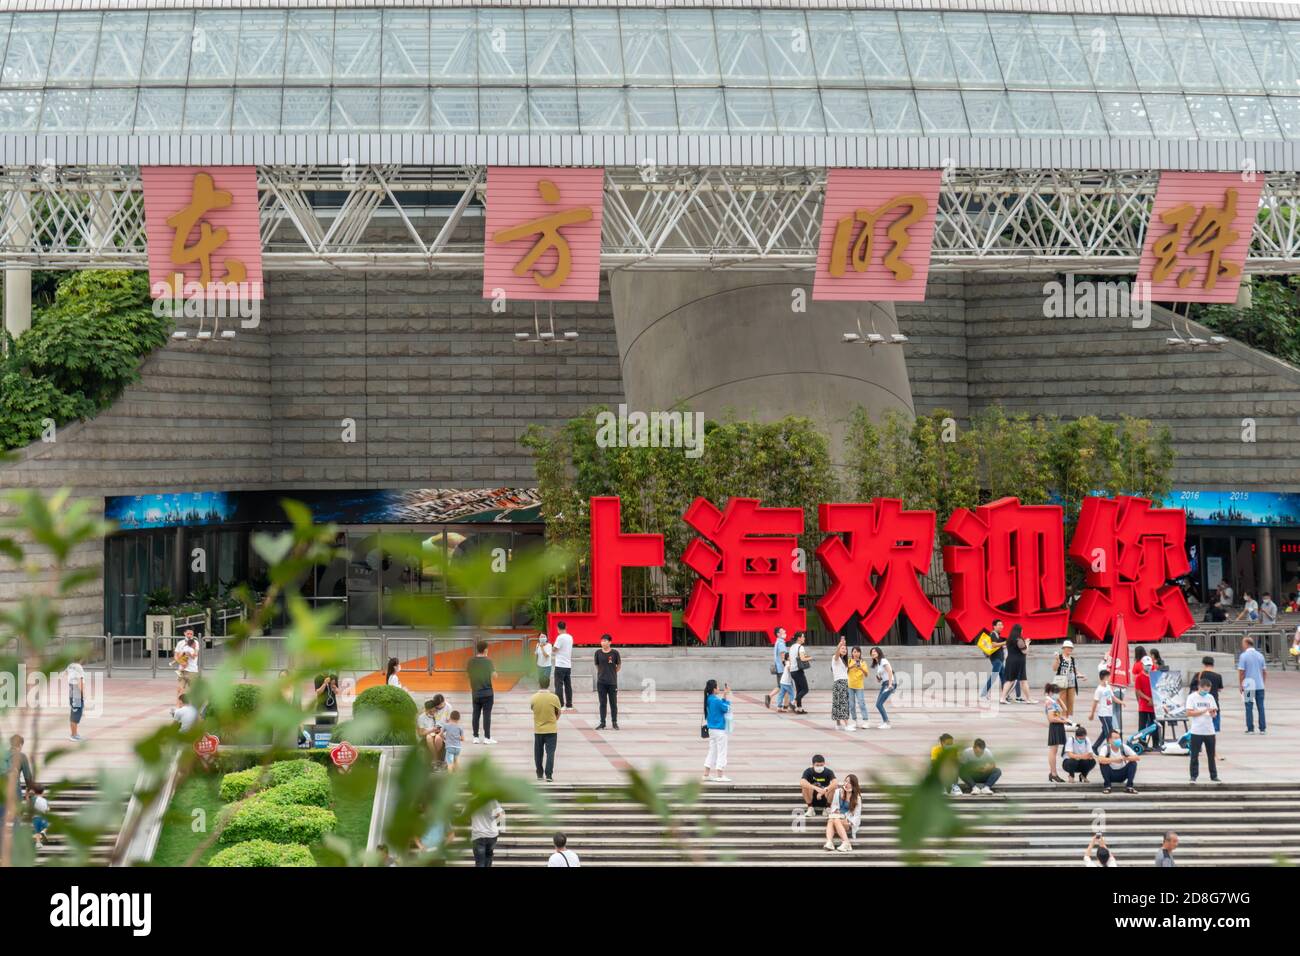 Les voyageurs se promo dans les attractions touristiques de Shanghai, Chine, 13 septembre 2020. L'aquarium océanique de Shanghai et l'Oriental Pearl ont annoncé un demi-prix Banque D'Images